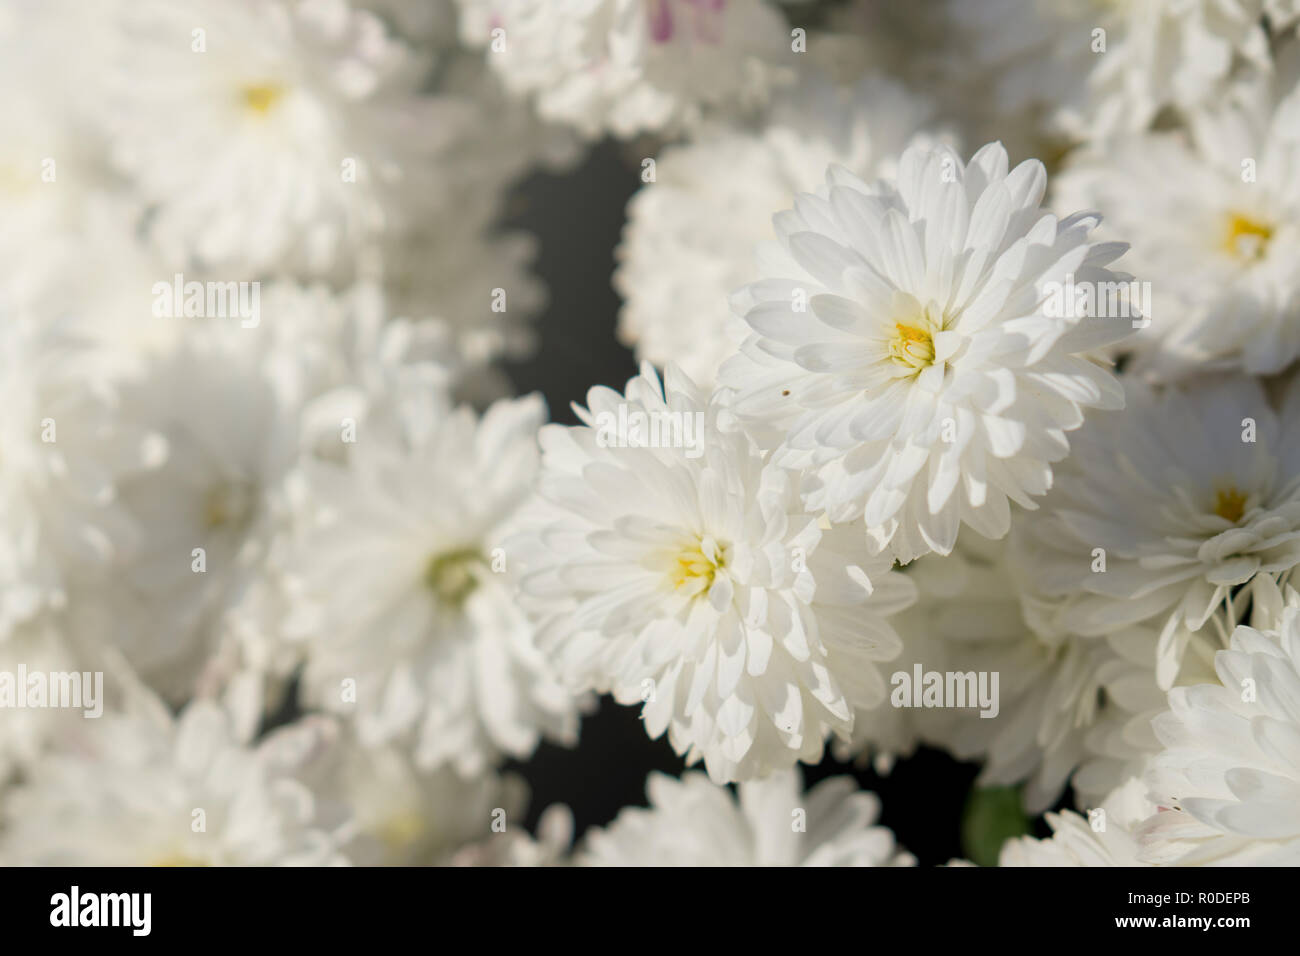 Viele weiße Blüten mit gelben Stempel. Blumen blühten in der Sonne  Stockfotografie - Alamy